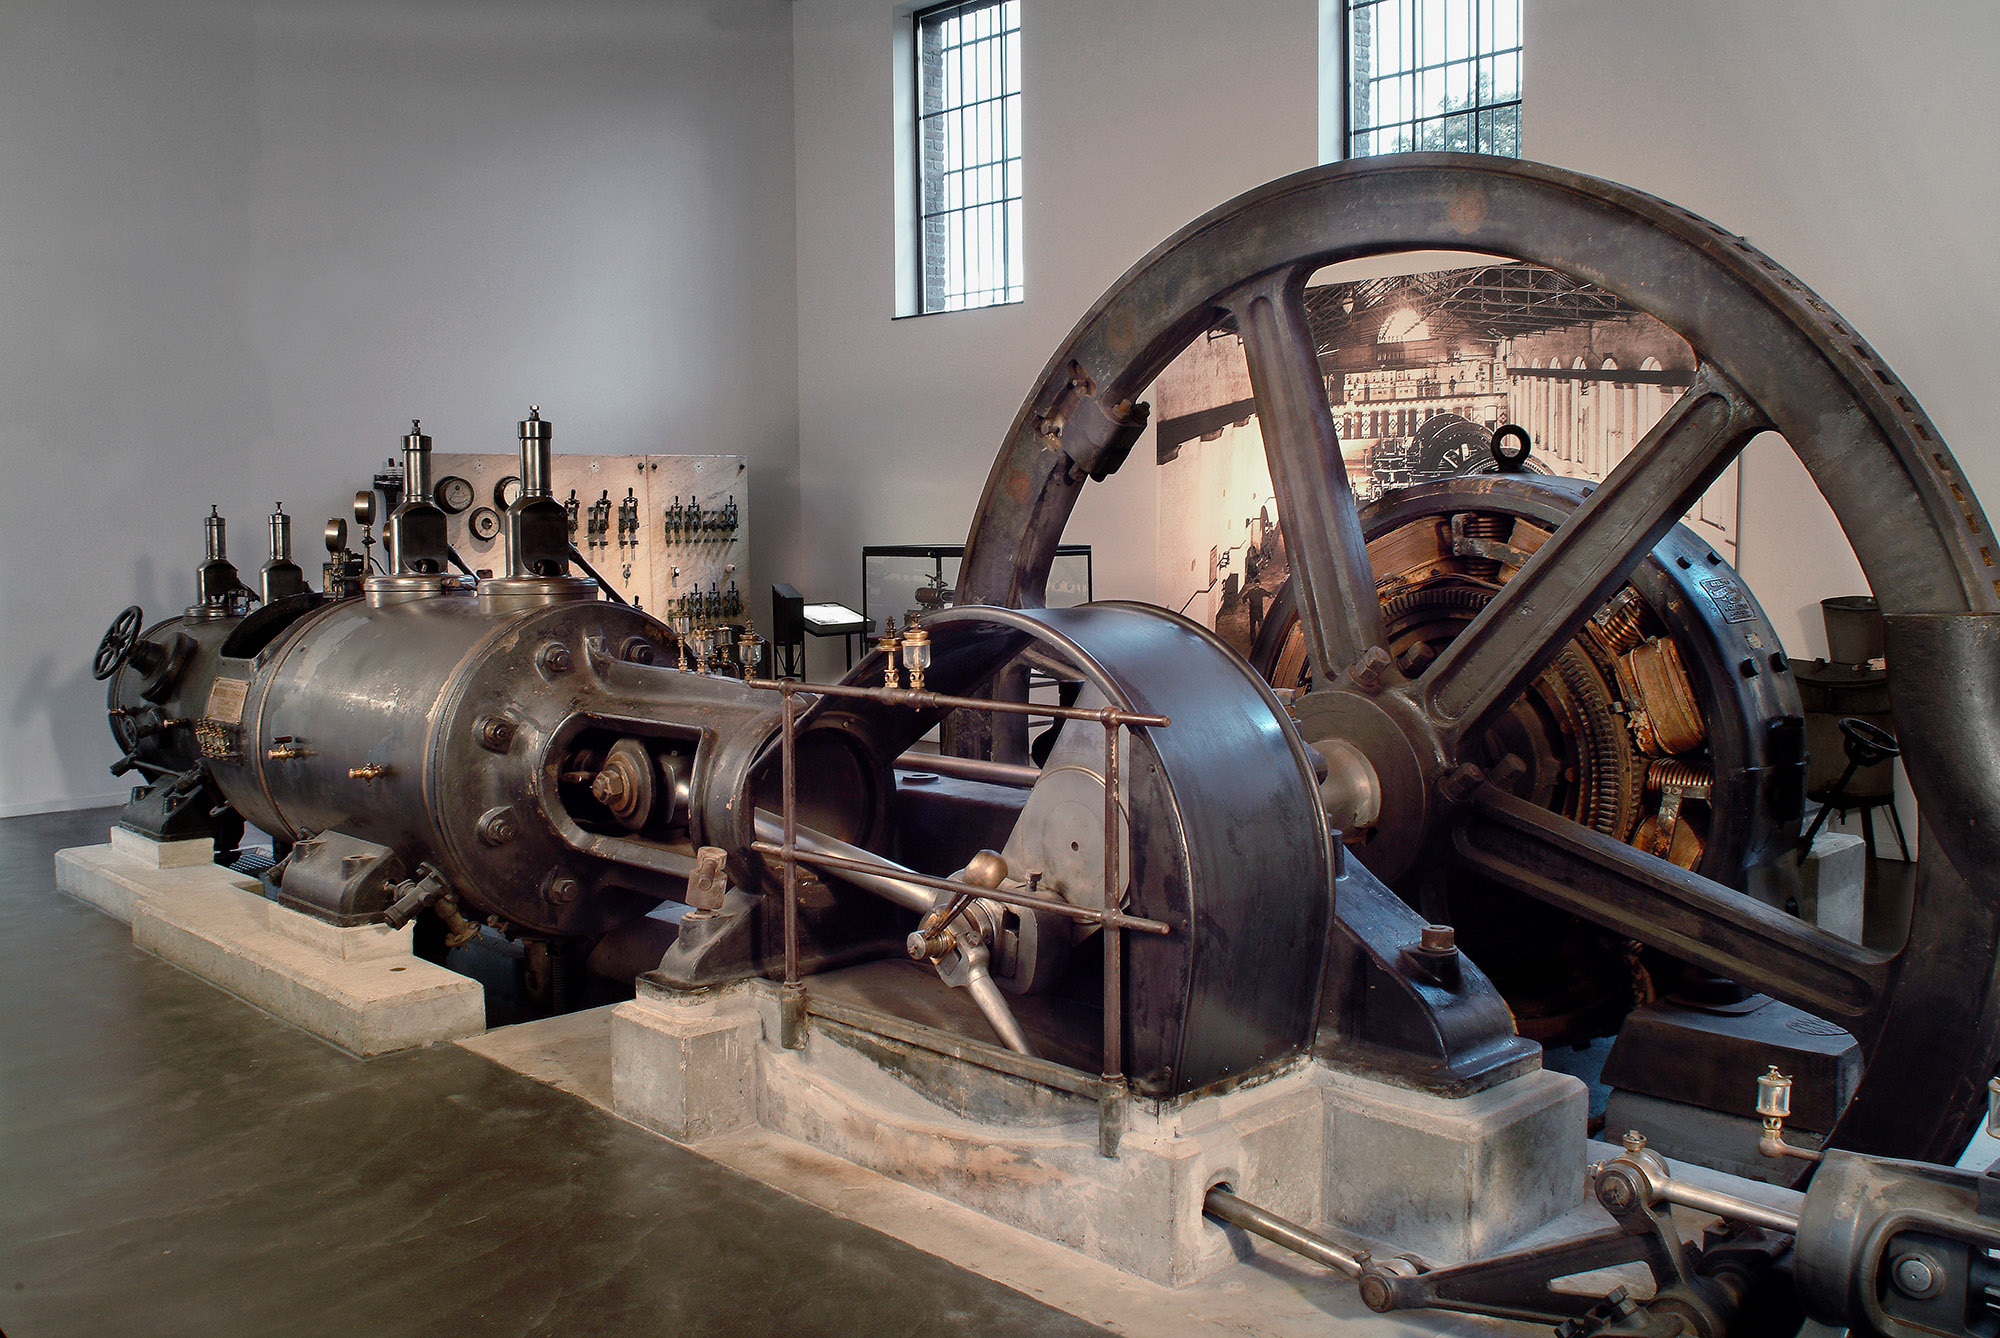 工业博物馆内的蒸汽机,是解释采矿过程的一个展品